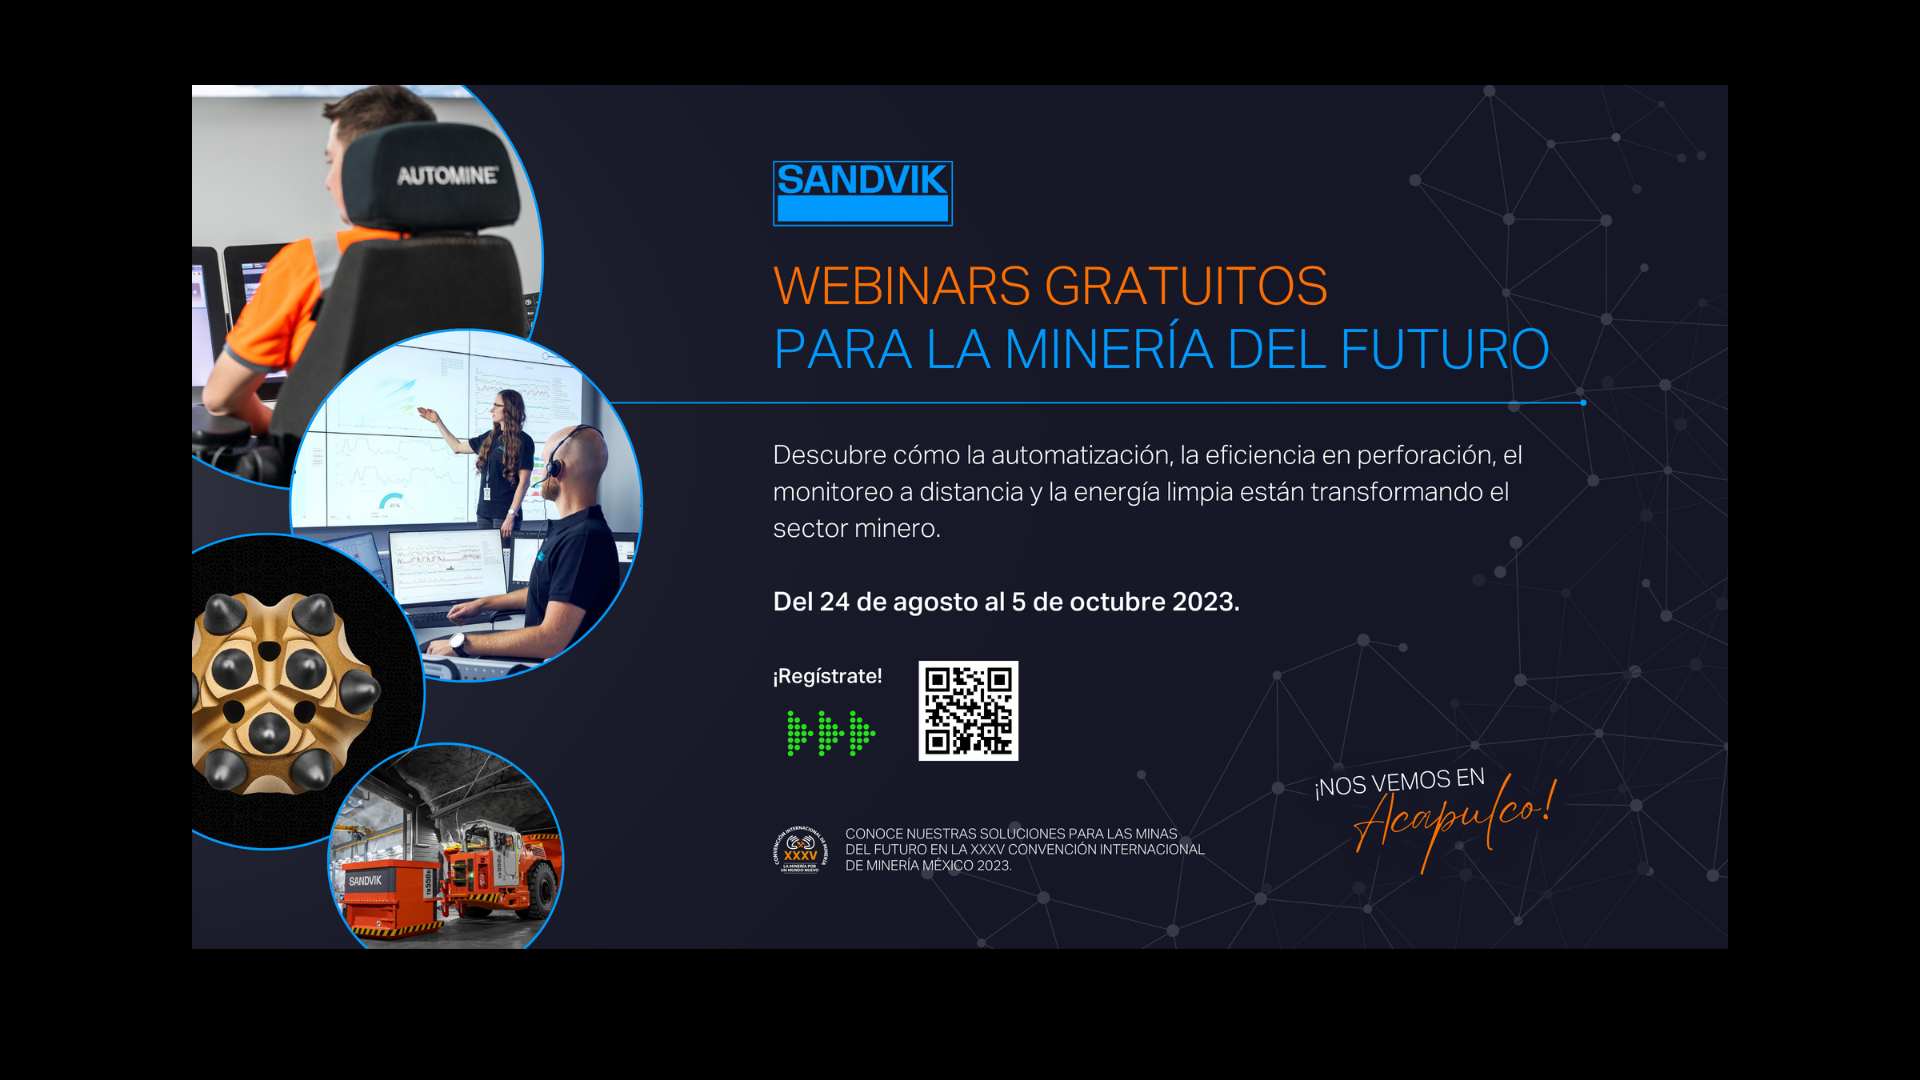 Sandvik México Continúa Liderando la Innovación en la Minería lanza Segundo Webinar Gratuito